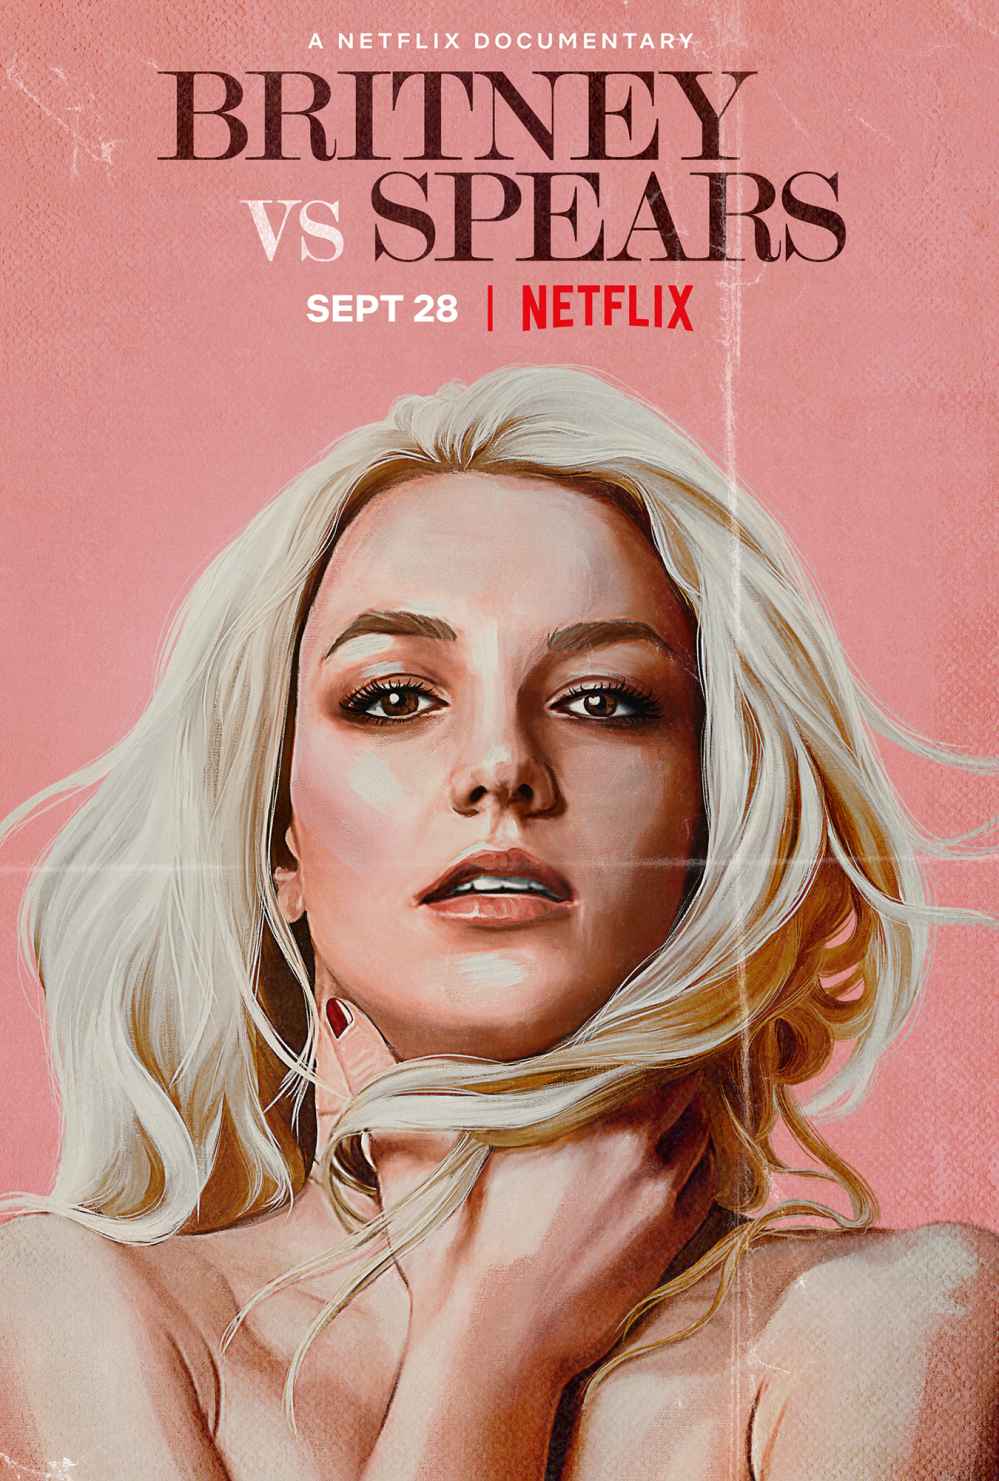 Britney vs Spears Netlfix trailer released